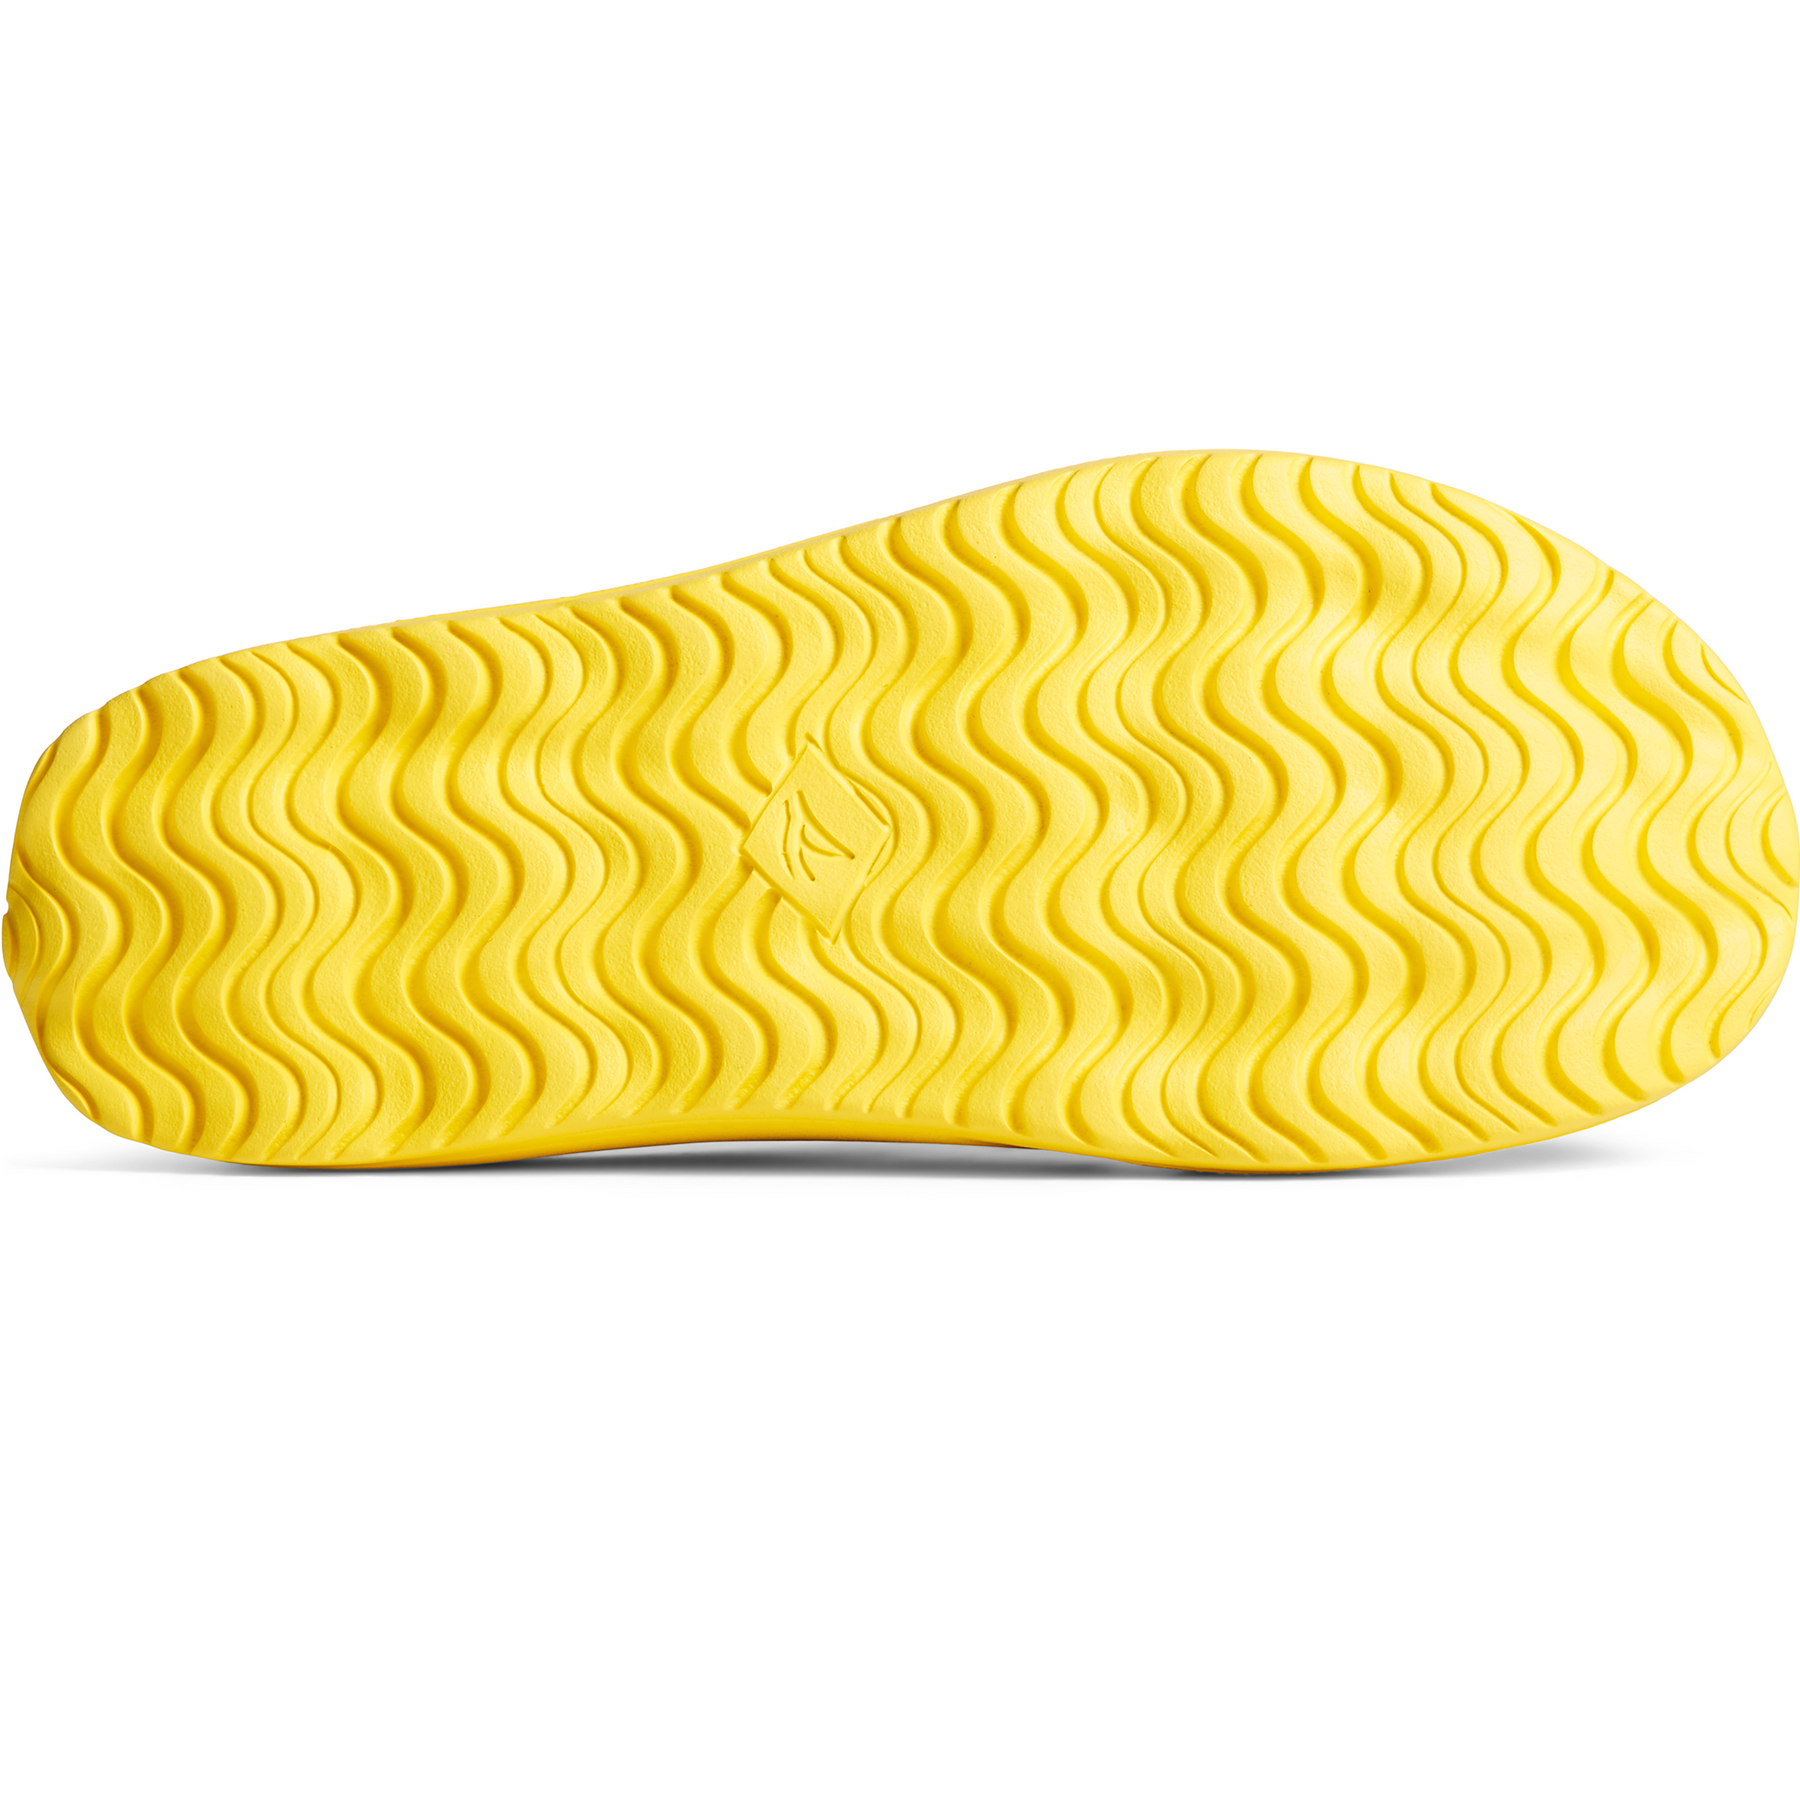 Men's Float Slide Logo Sandal - Yellow (STS24801)